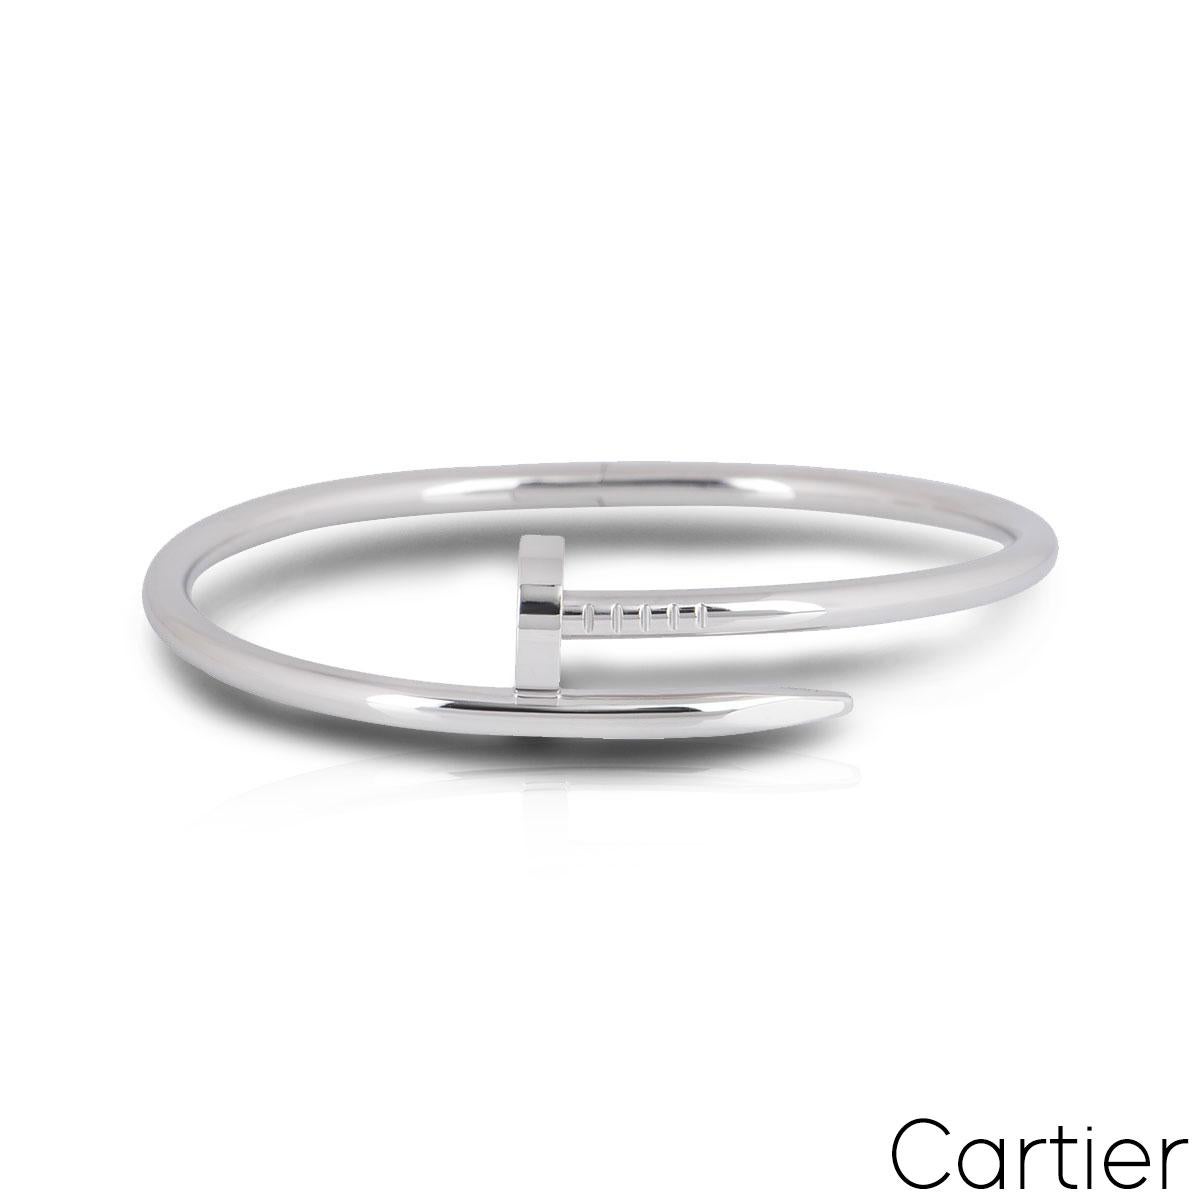 Cartier White Gold Plain Juste Un Clou Bracelet Size 15 B6048315 In Excellent Condition For Sale In London, GB